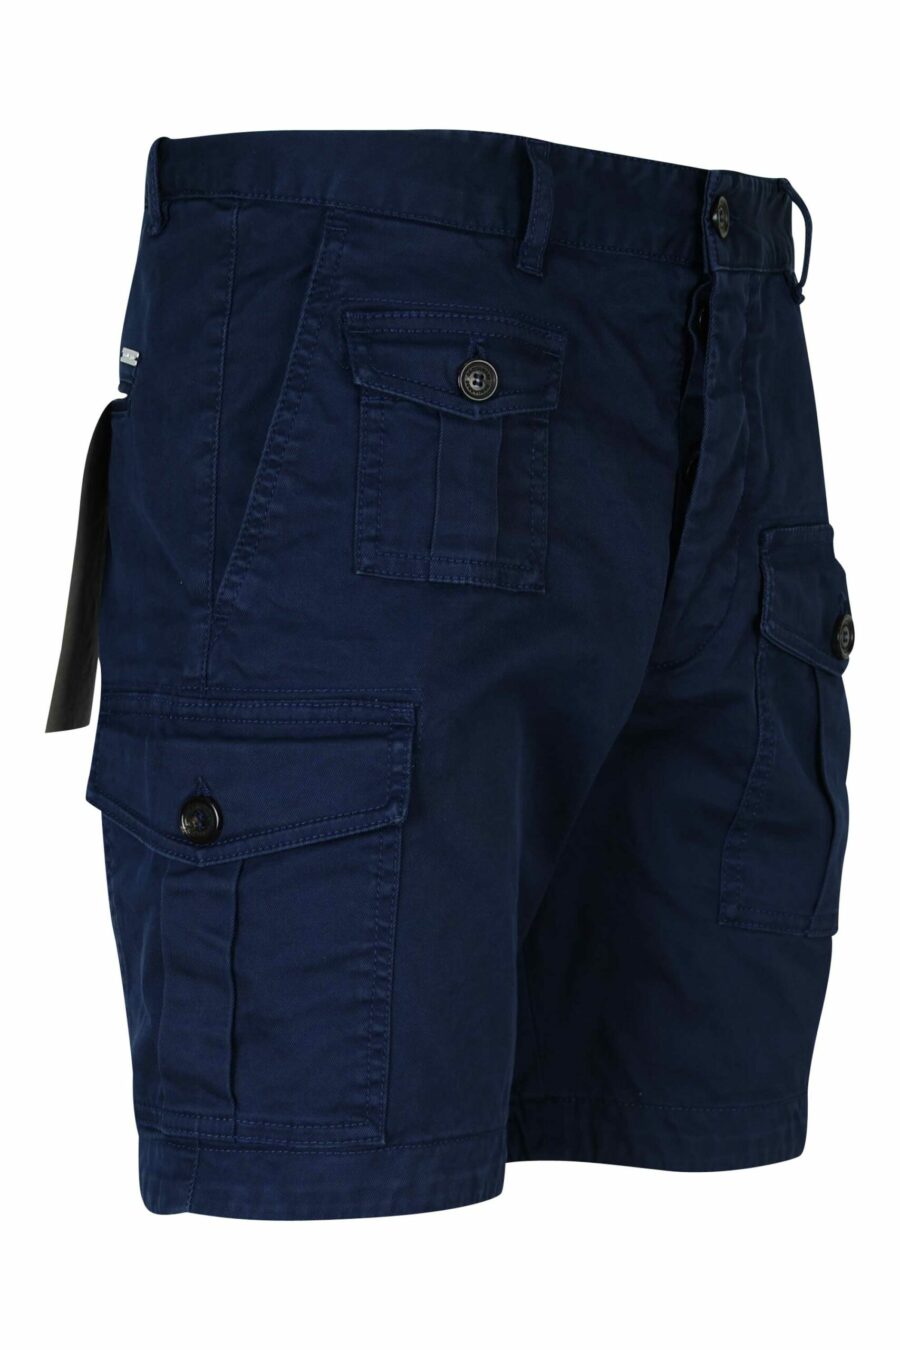 Pantalón azul oscuro corto "sexy cargo" - 8054148321772 1 scaled